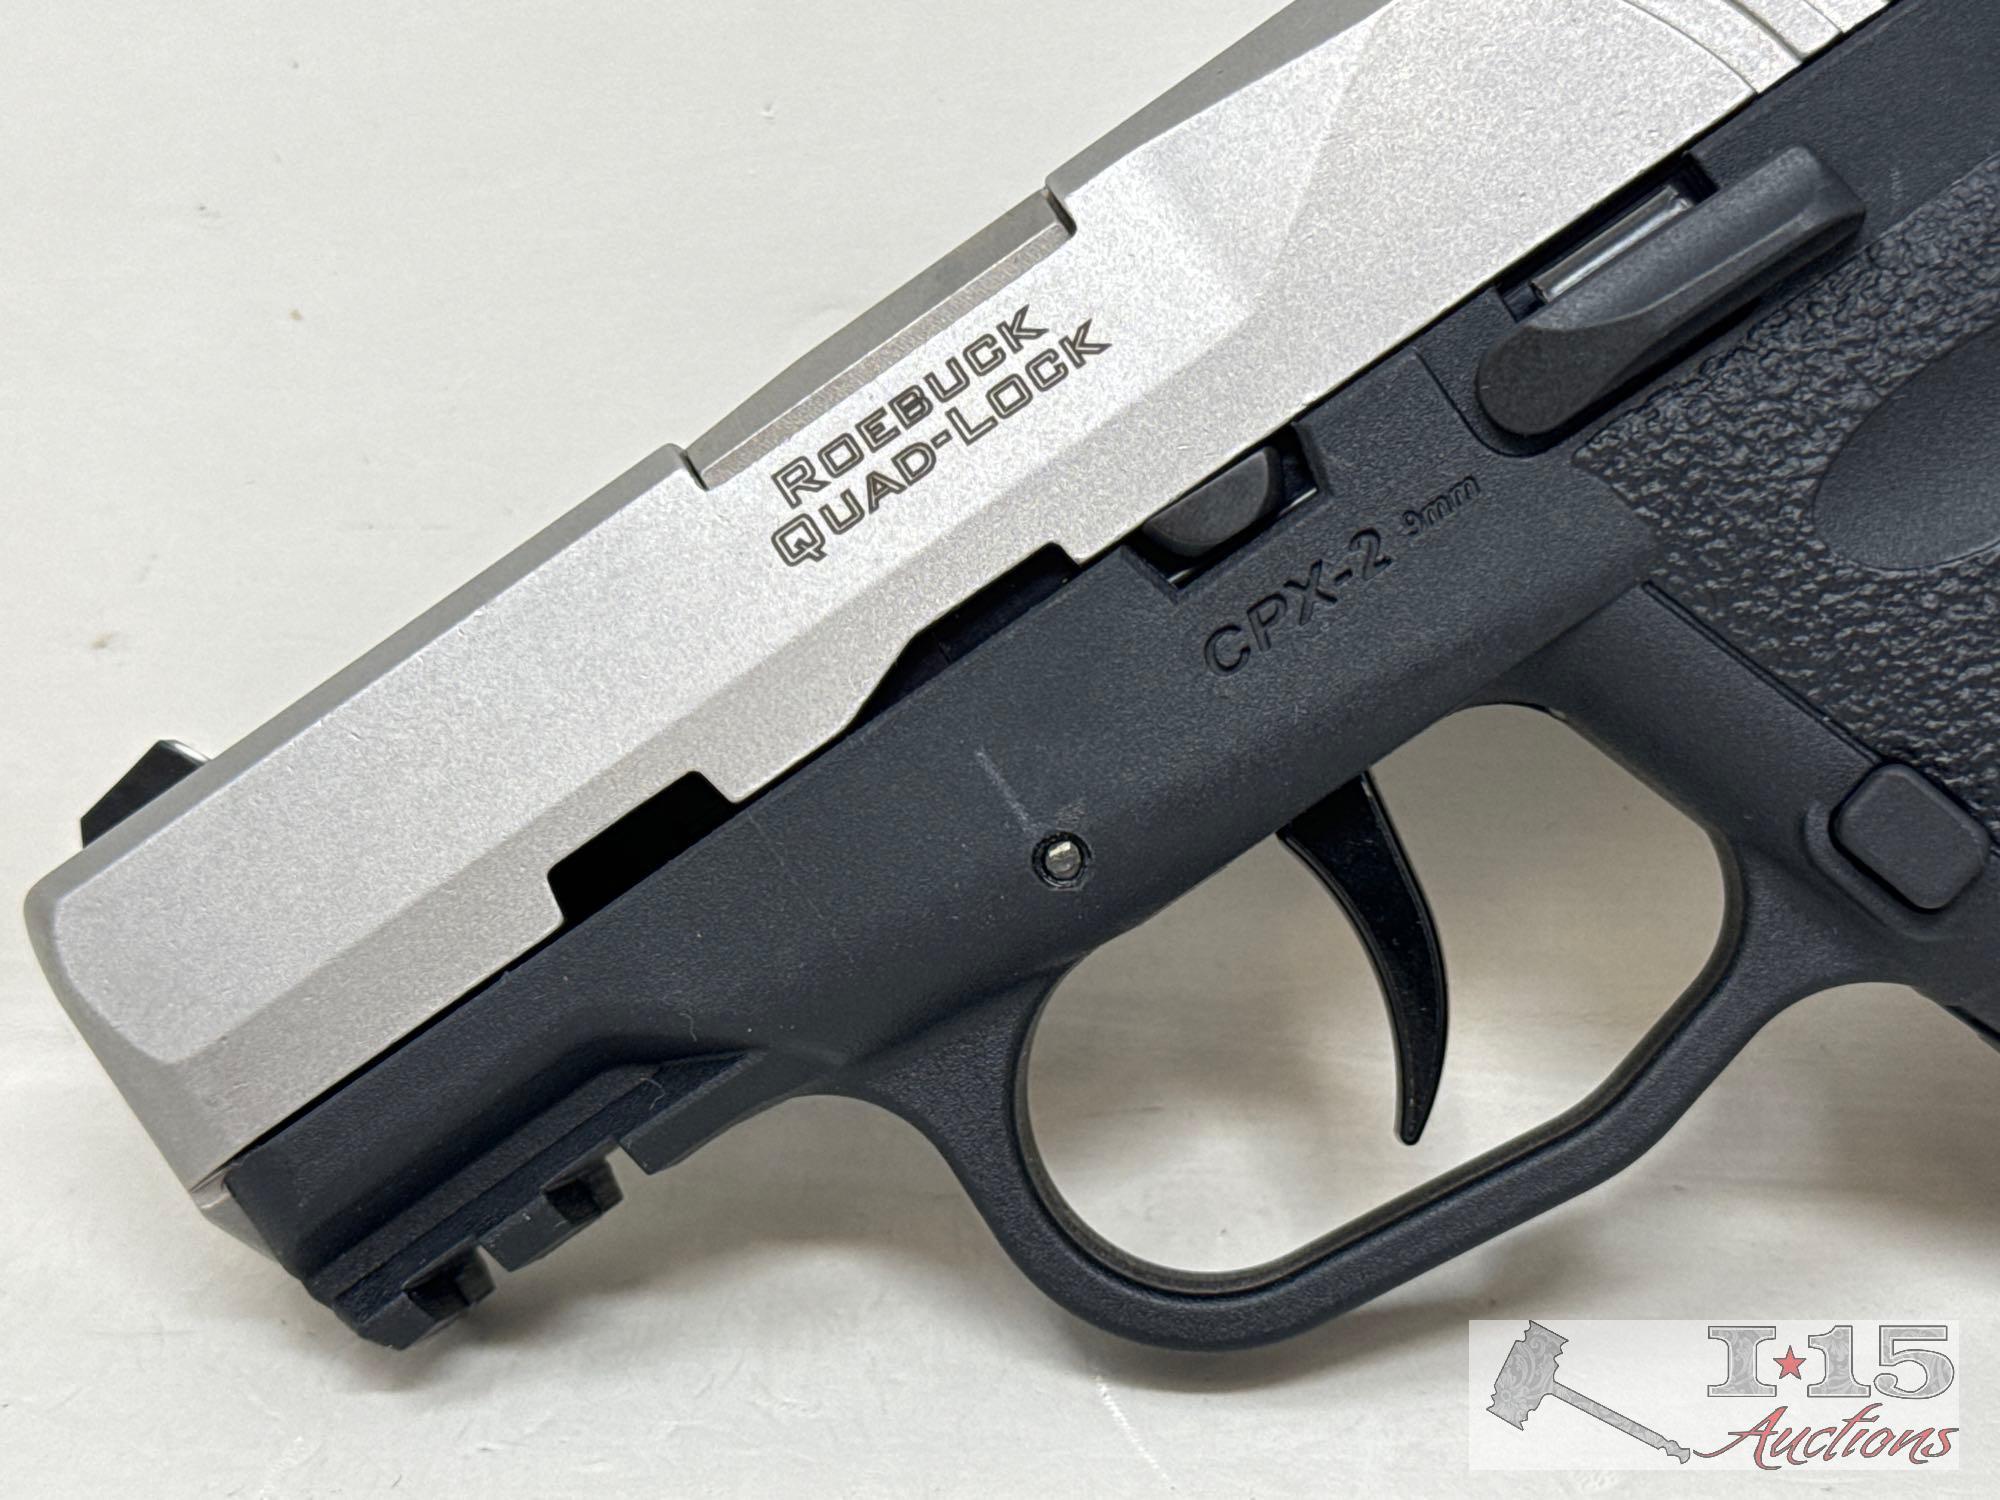 5CCY CPX 9mm Semi-Auto Pistol